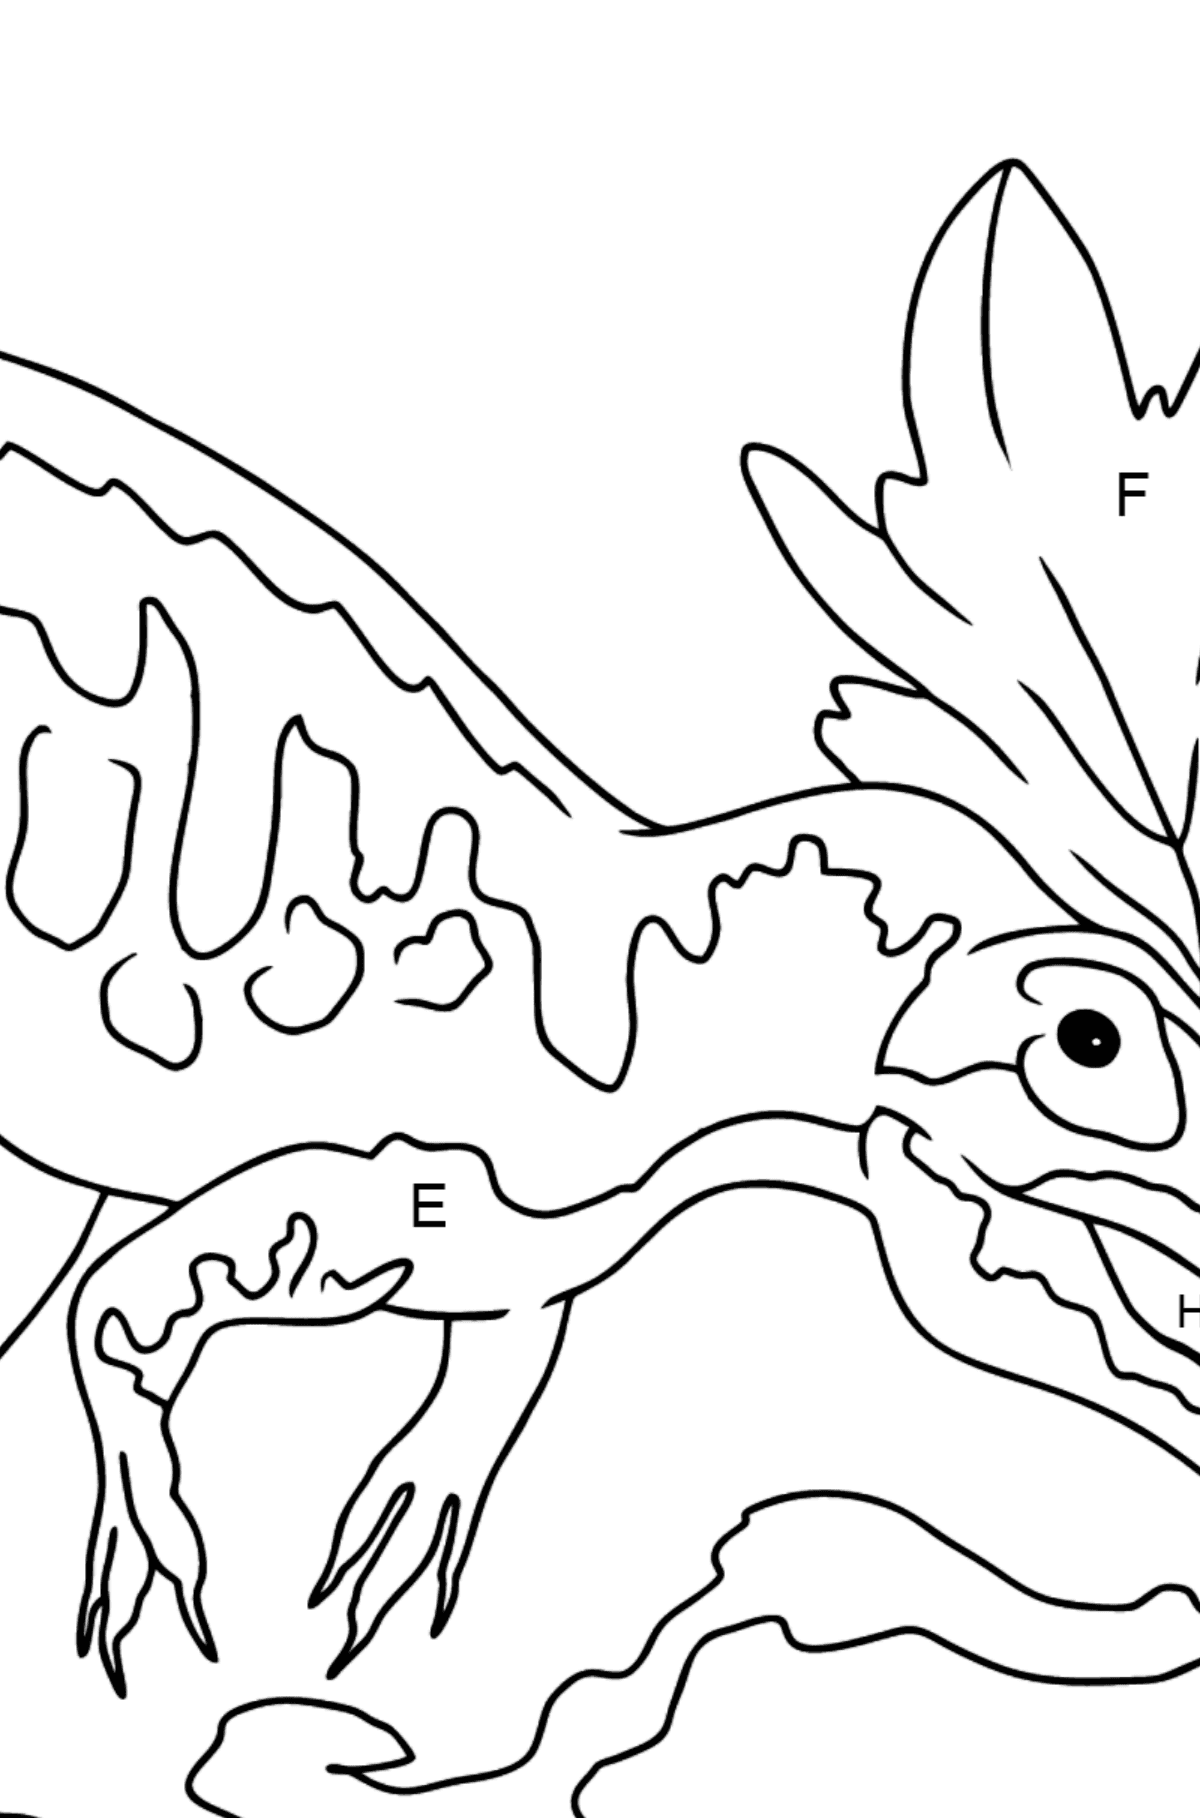 Dibujo para colorear de alosaurio (fácil) - Colorear por Letras para Niños